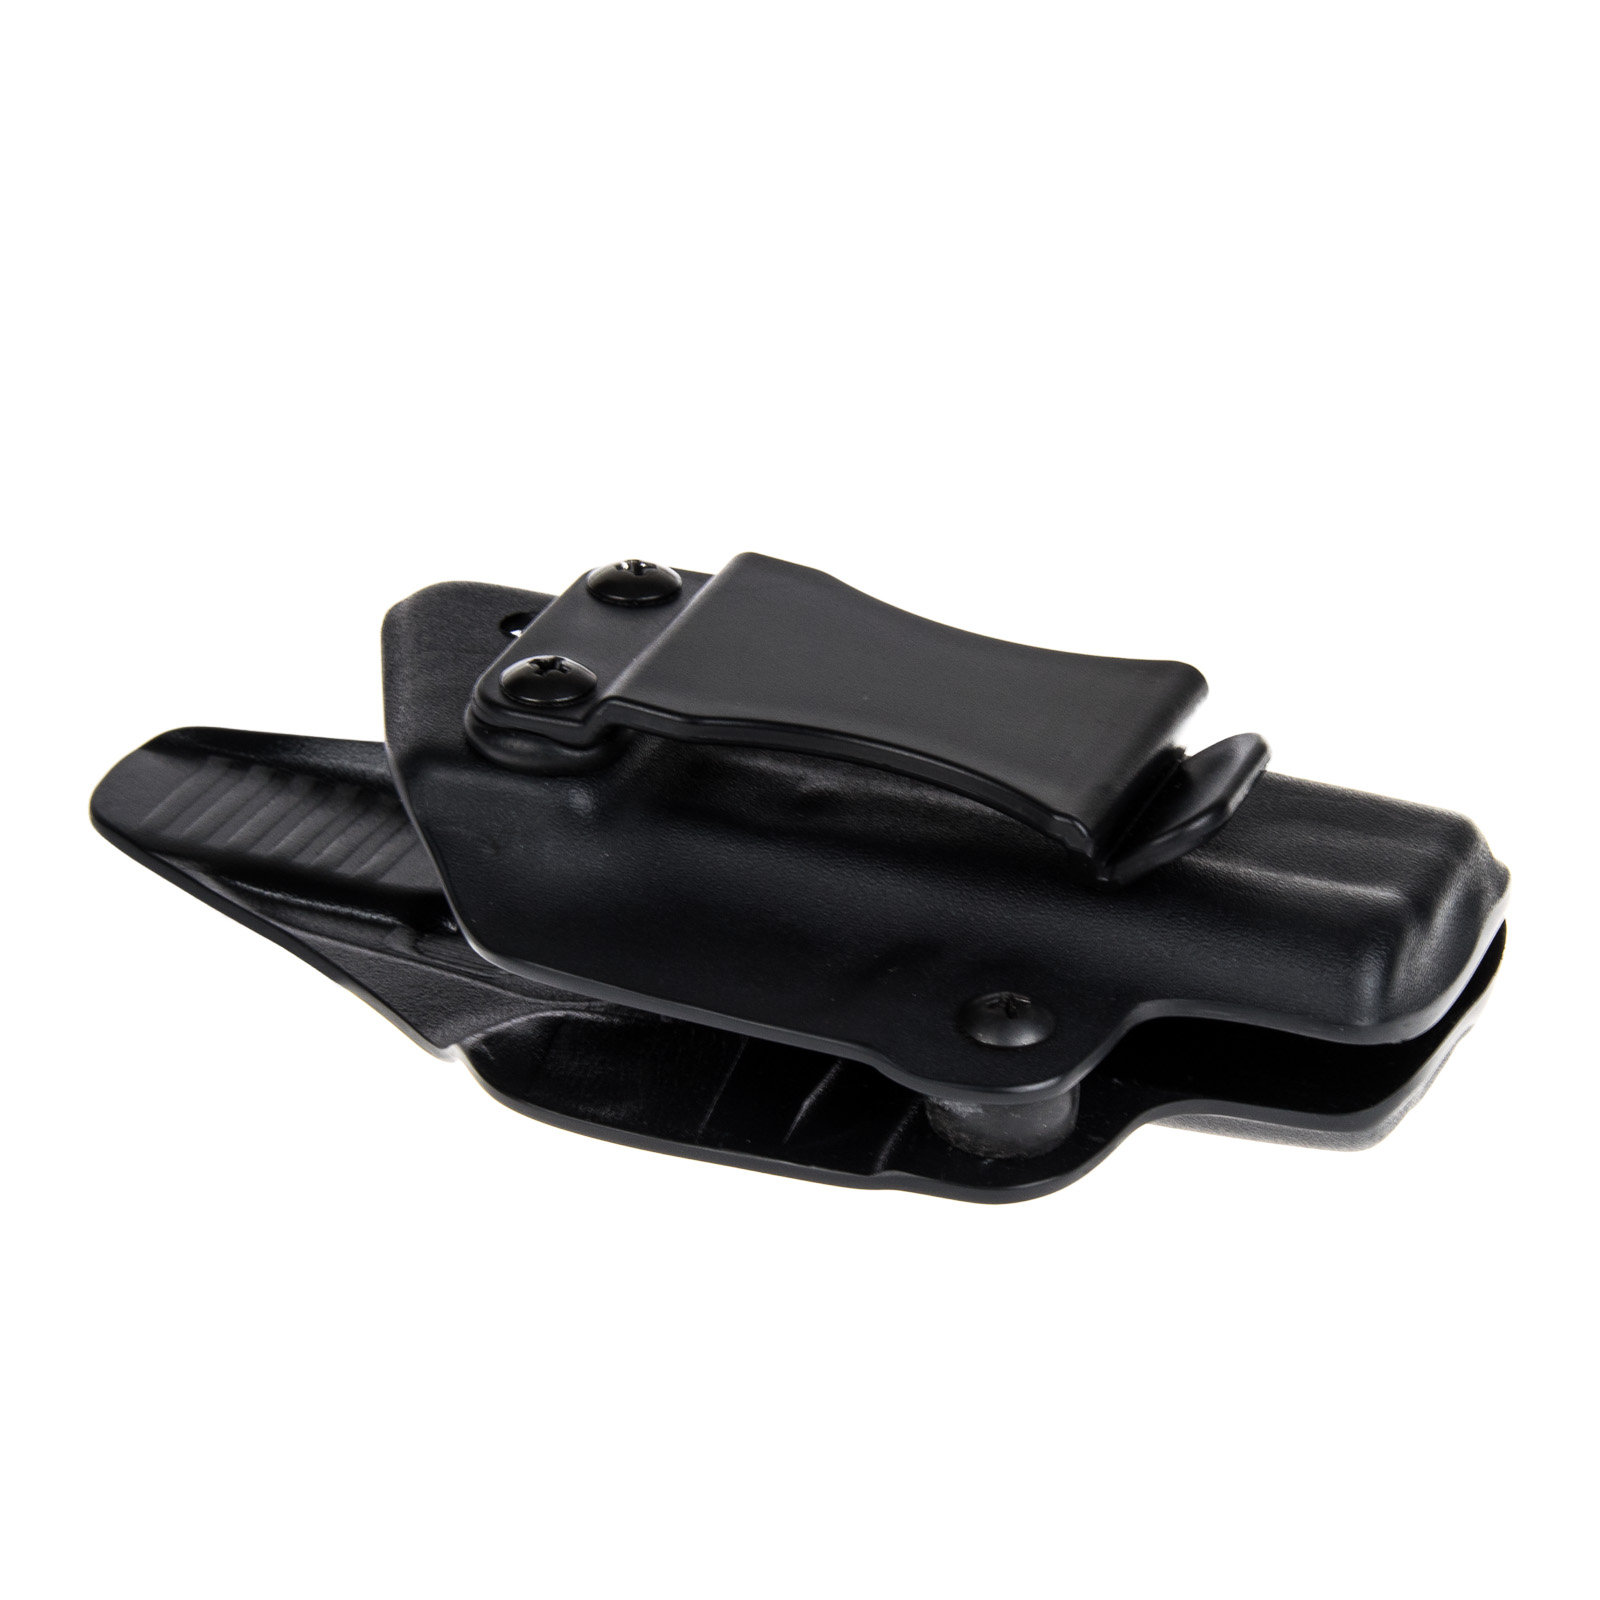 Vnitřní pouzdro RHholster, plný sweatguard, černá/černá (Beretta 92 FS)